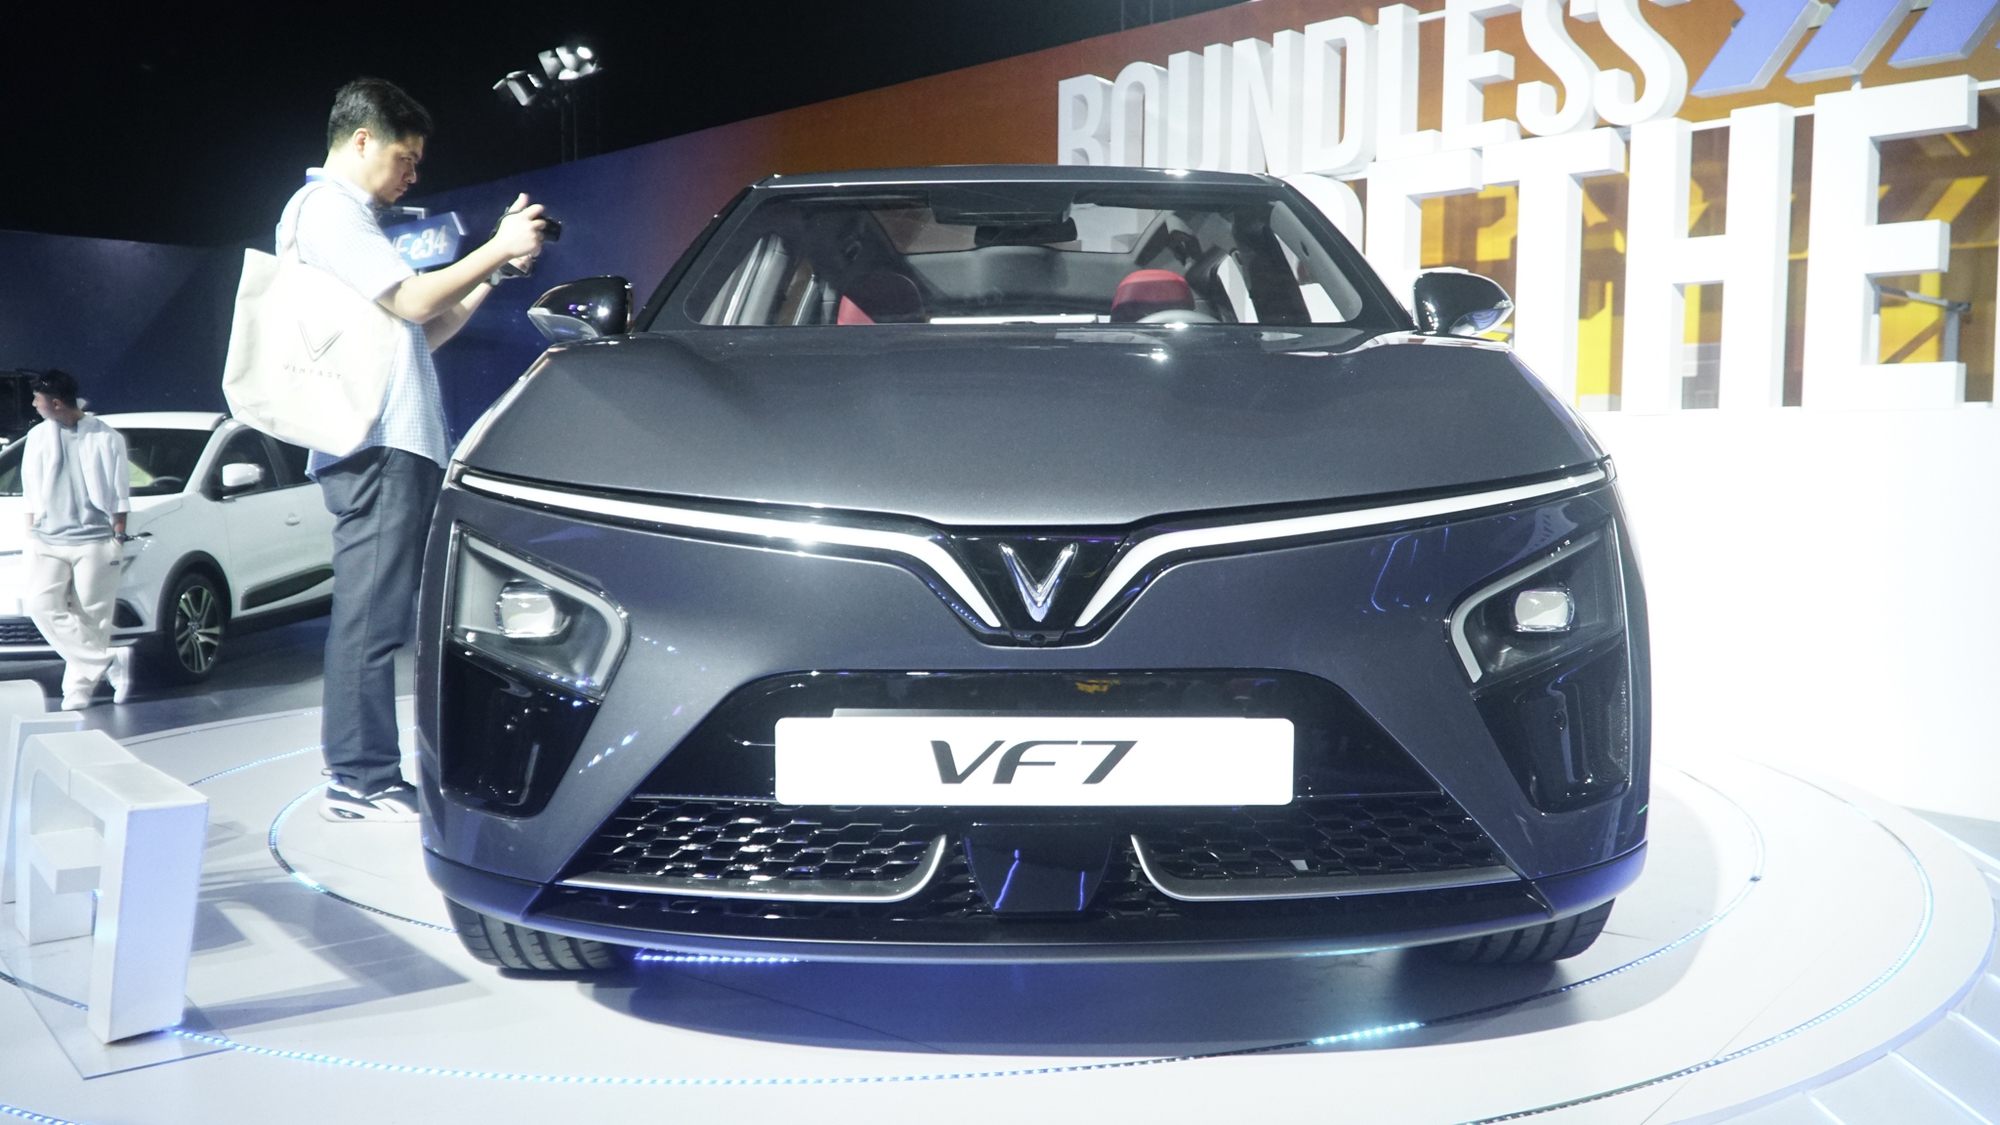 Đại lý nhận đặt cọc VinFast VF 7: Giá dự kiến từ 760 triệu đồng, có thuê pin, giao xe trong tháng 11 - Ảnh 3.